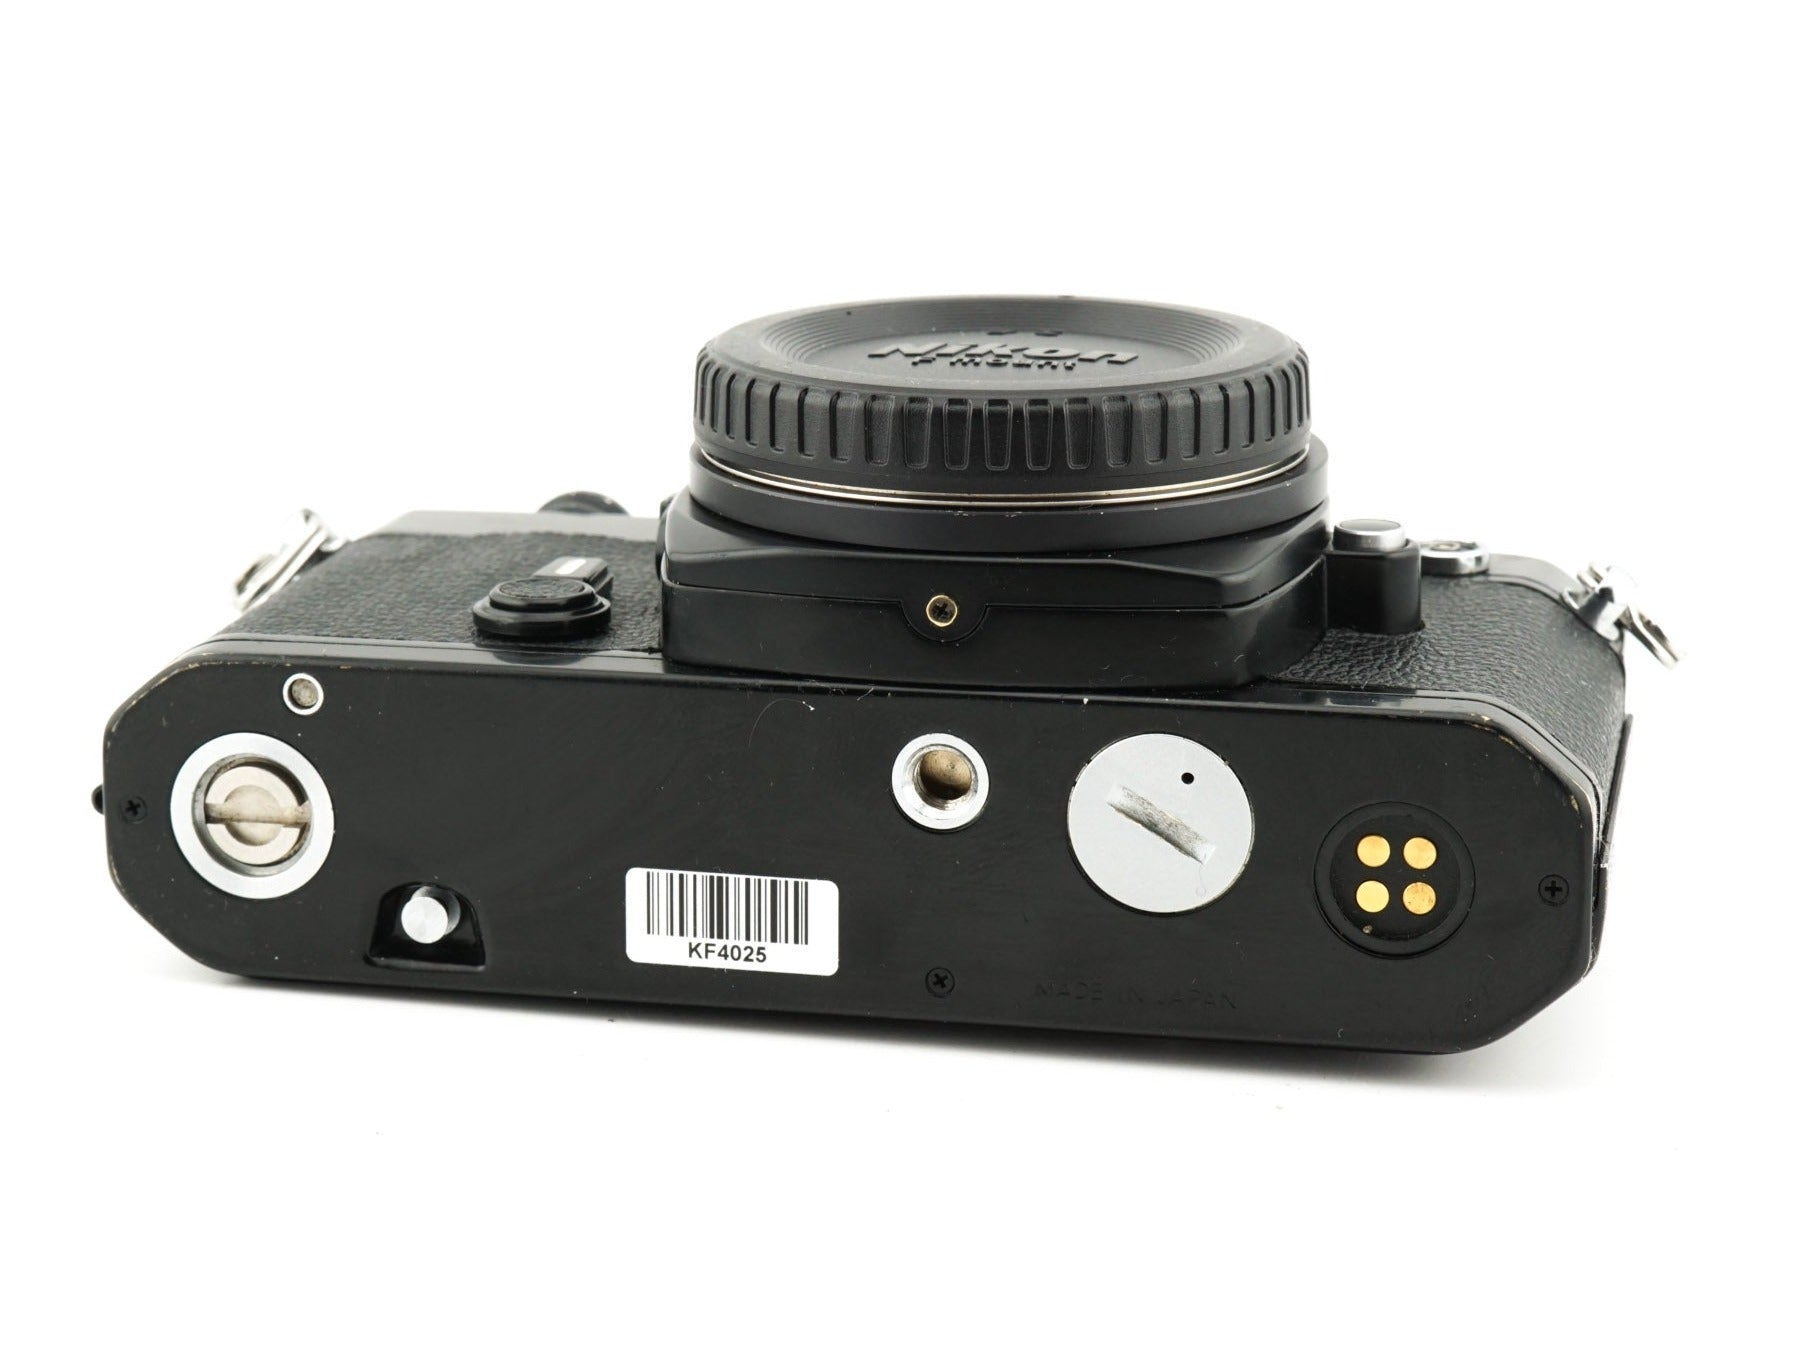 Nikon FE BLACK 35mm SLR Film Camera Body